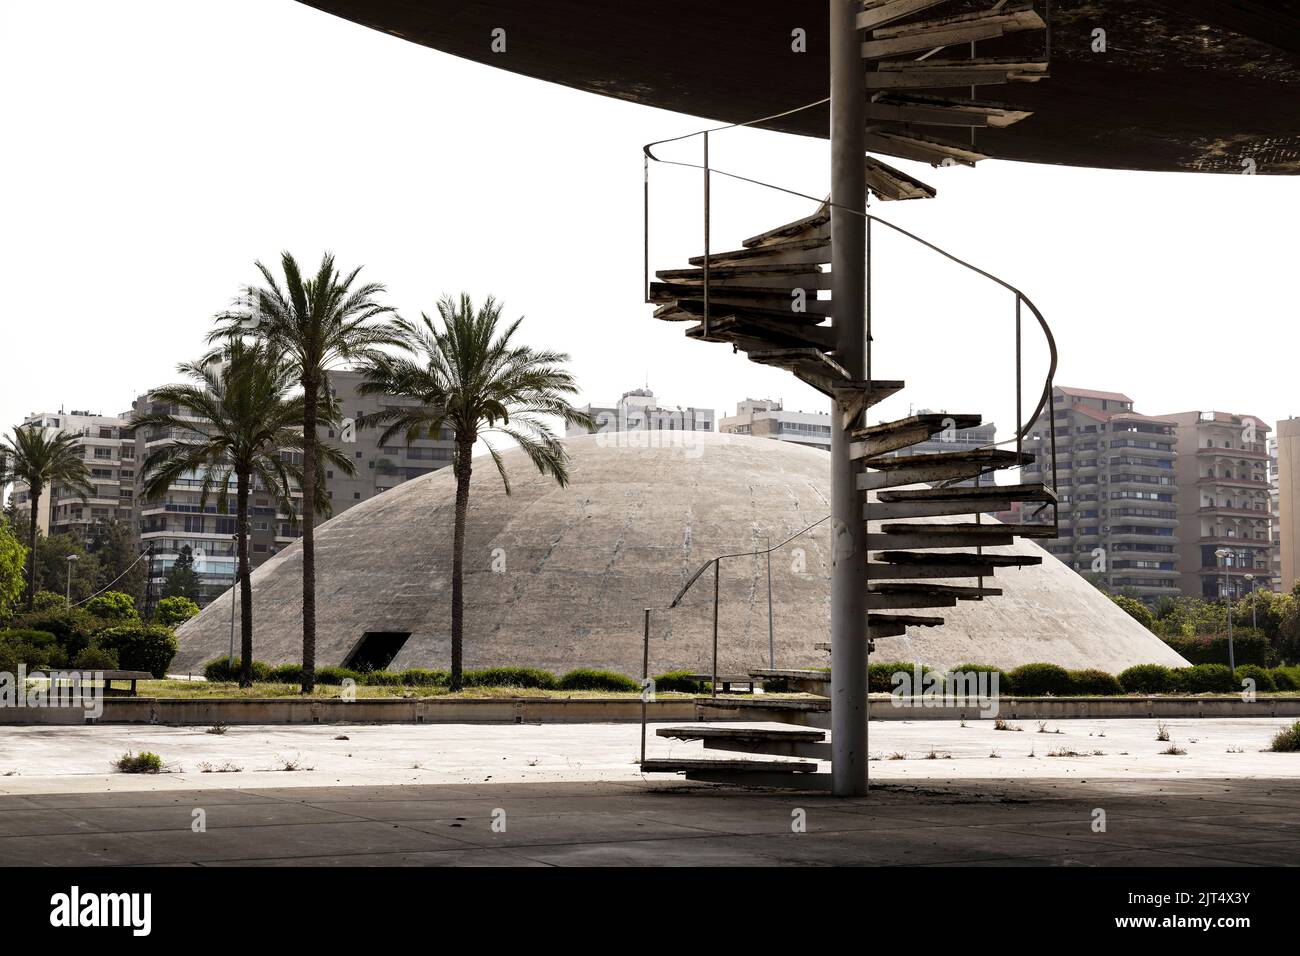 L'architetto Oscar Niemeyer ha progettato gli edifici per il centro fieristico internazionale Rashid Karami di Tripoli, ma i lavori di costruzione non sono mai stati completati a causa dello scoppio della guerra civile. Tripoli, Libano Foto Stock